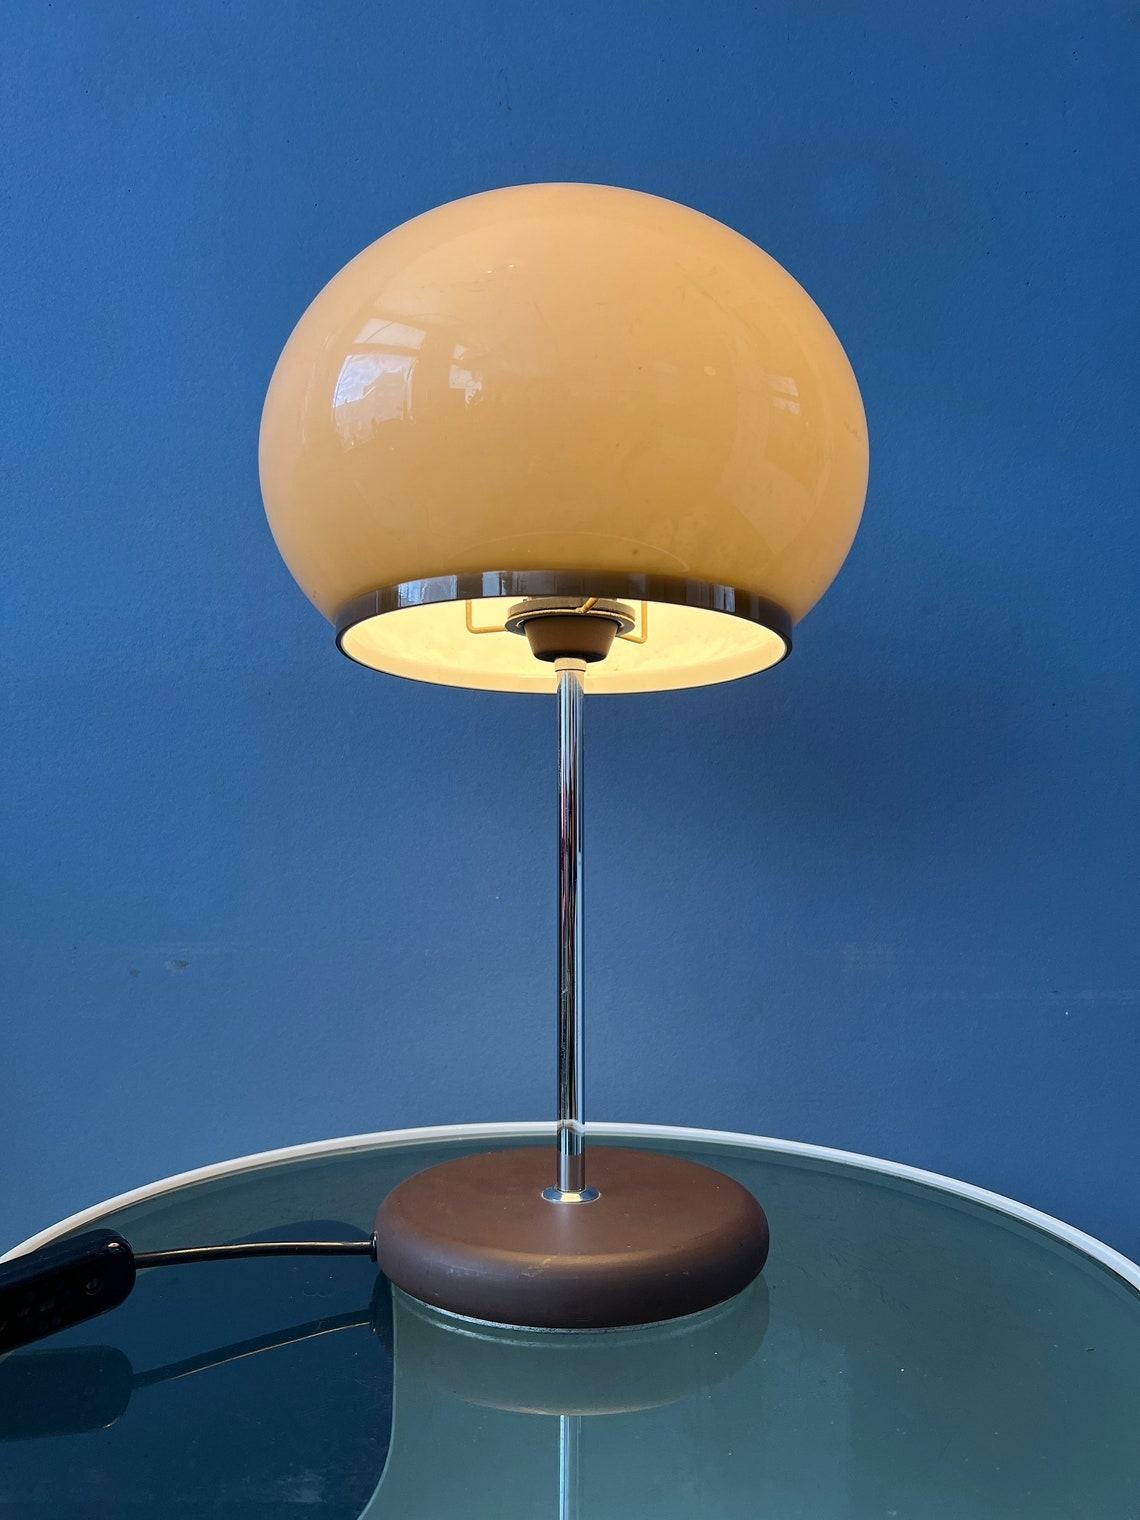 Une lampe de table champignon de Dijkstra souvent recherchée. La teinte champignon de couleur mocca produit une lumière chaude et agréable. L'abat-jour peut être facilement déplacé vers le haut et vers le bas de la base. La lampe nécessite deux